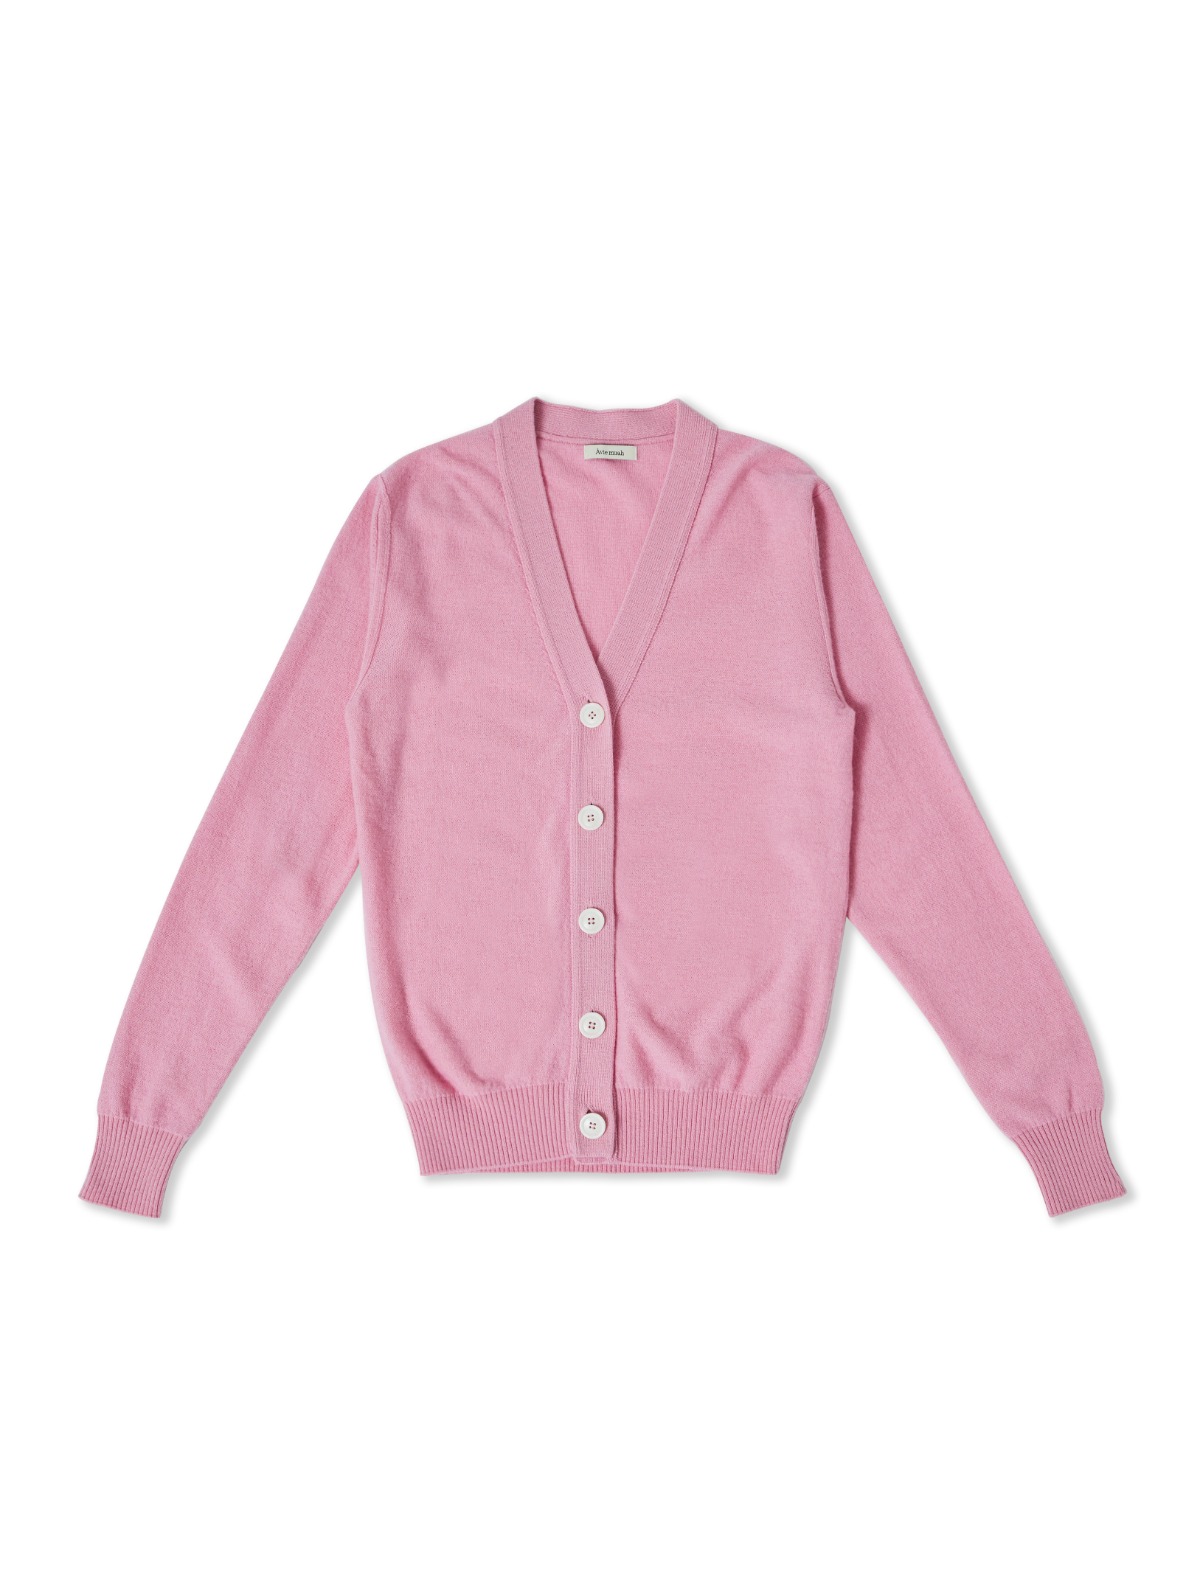 Merino Wool Cardigan (Pink)